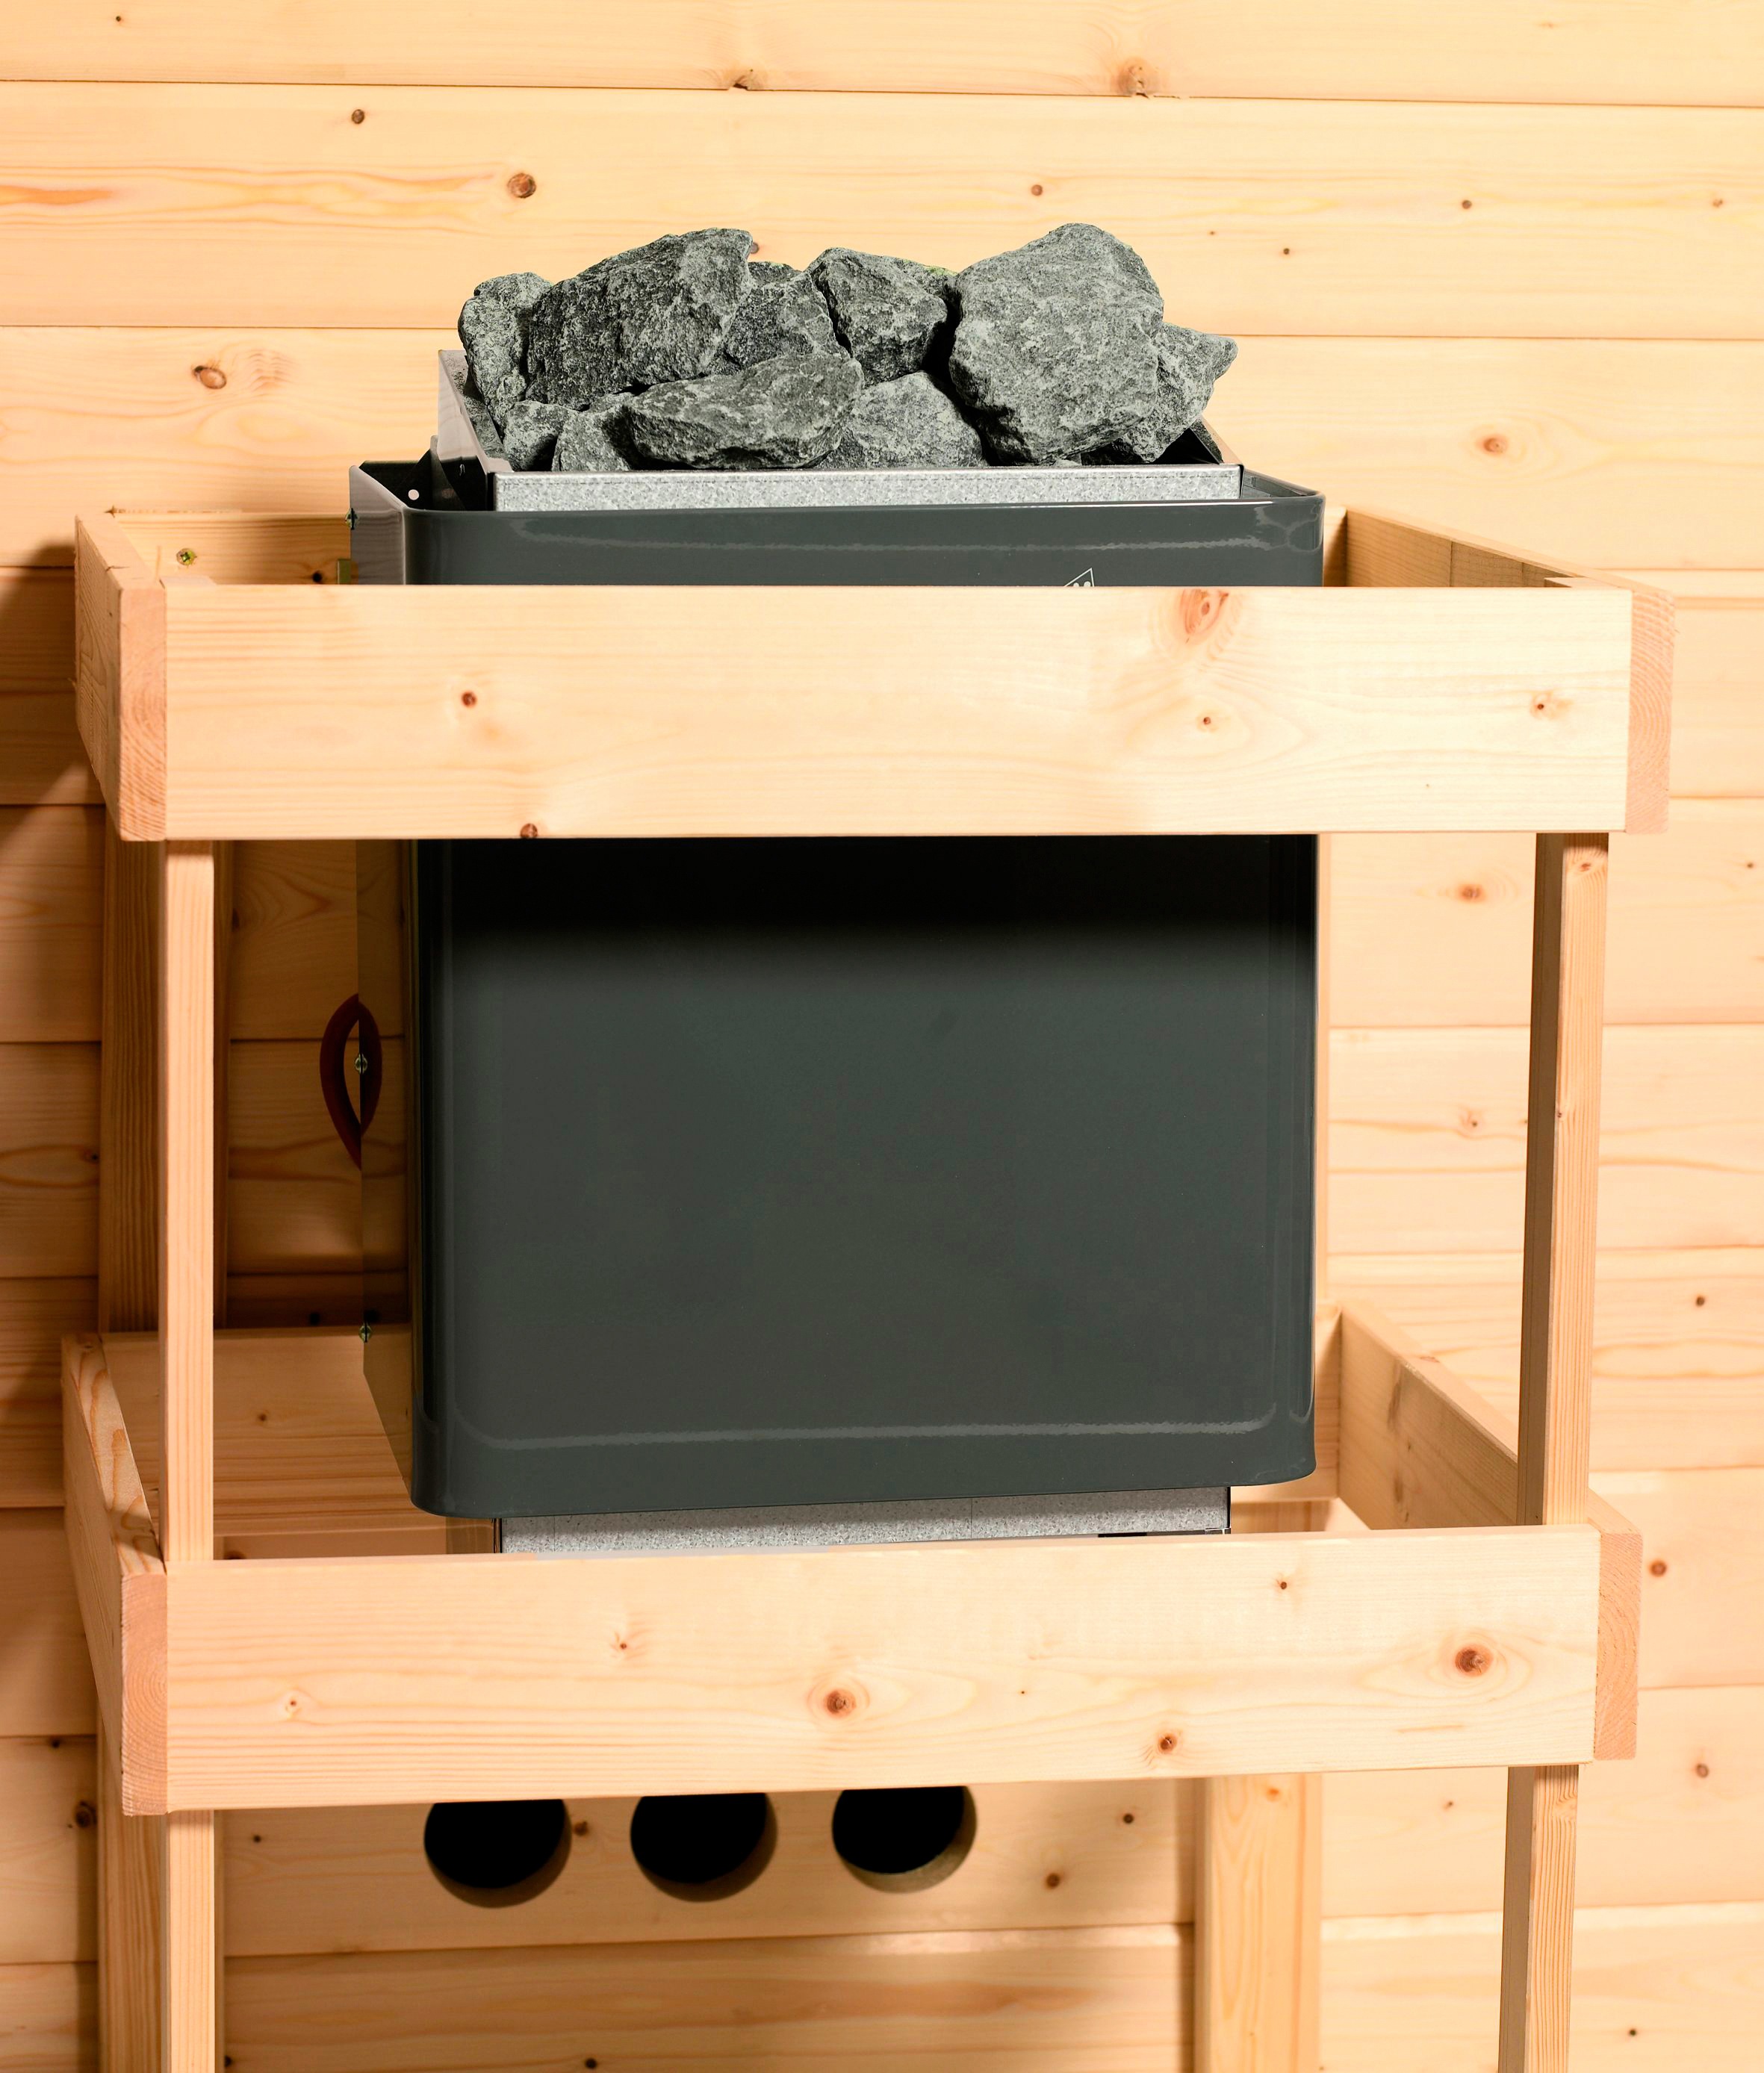 Karibu Sauna »Gitte«, (Set), 9-kW-Ofen mit externer Steuerung